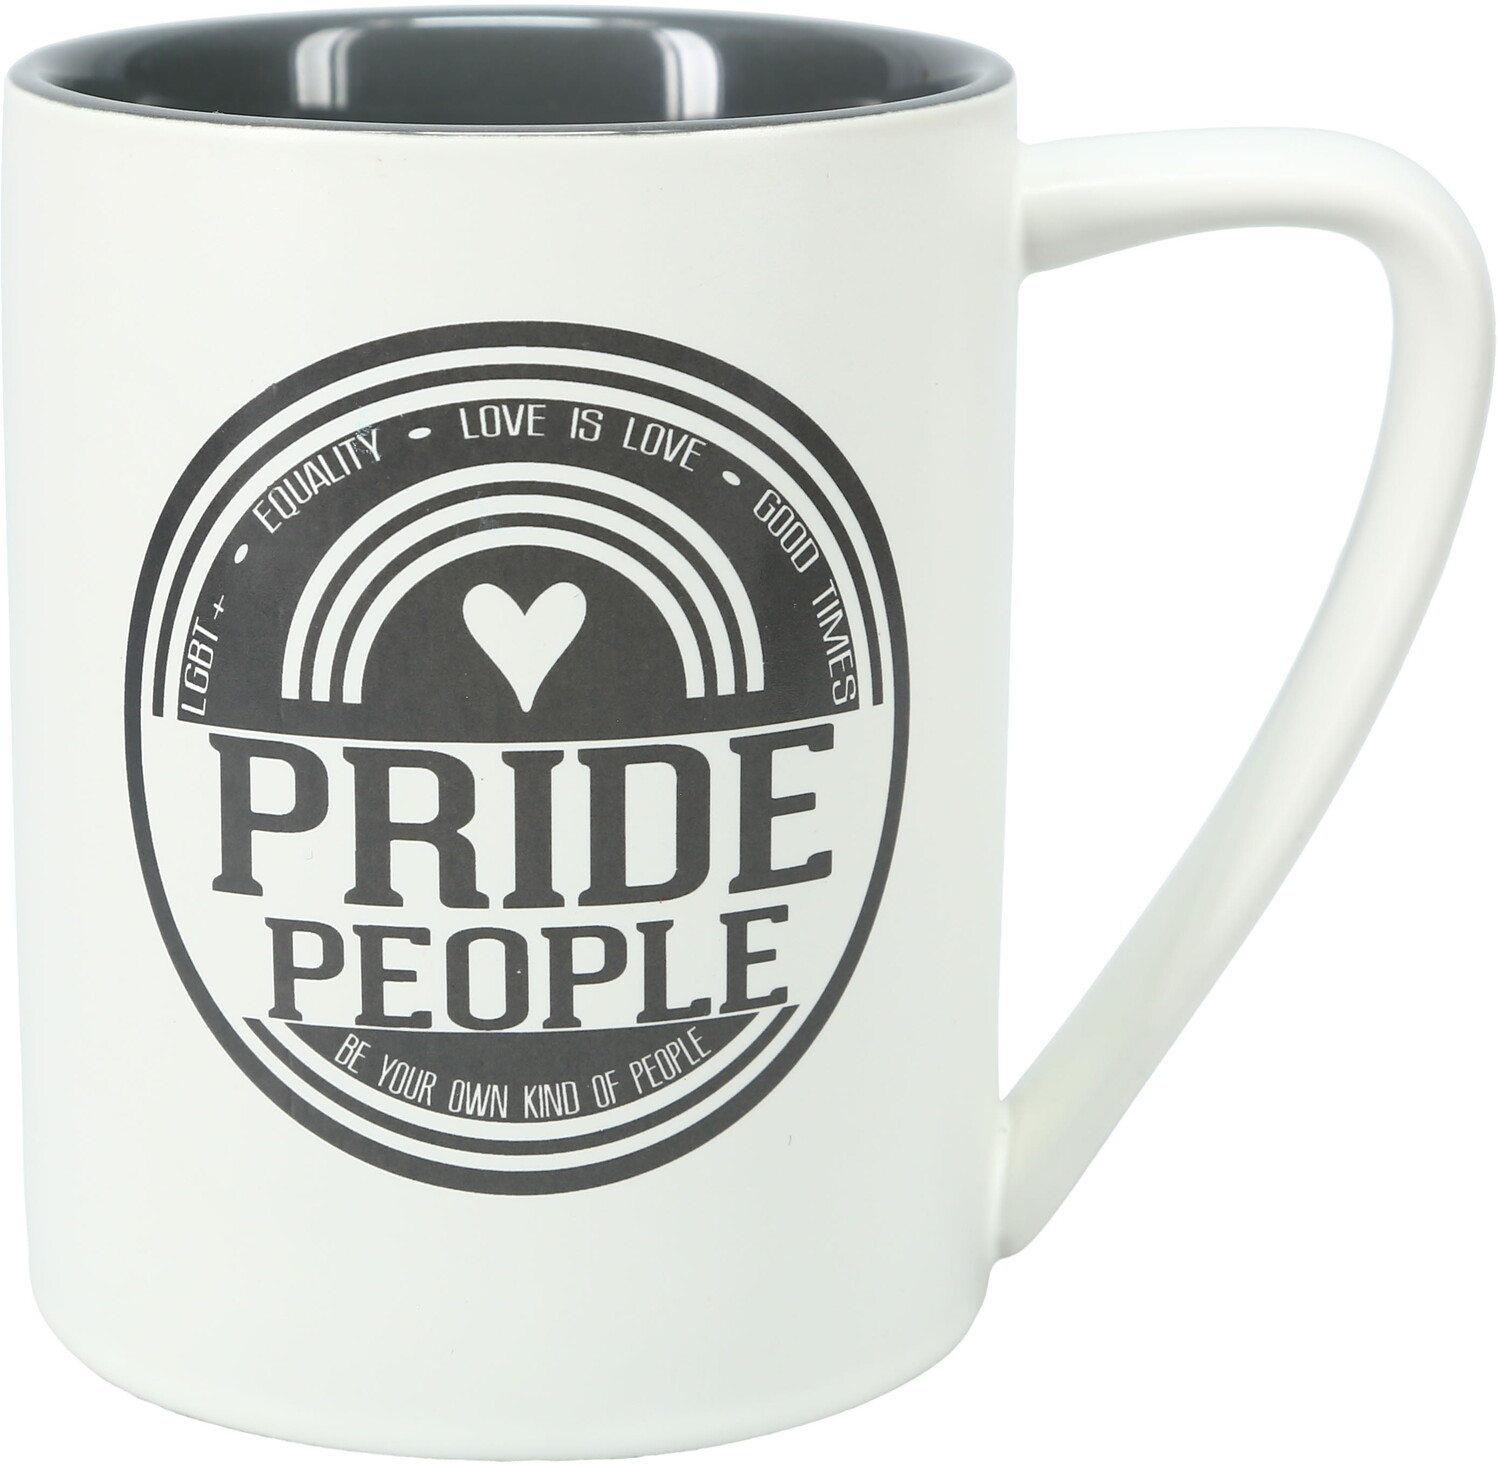 Pride People by We People - Pride People - 18 oz Mug